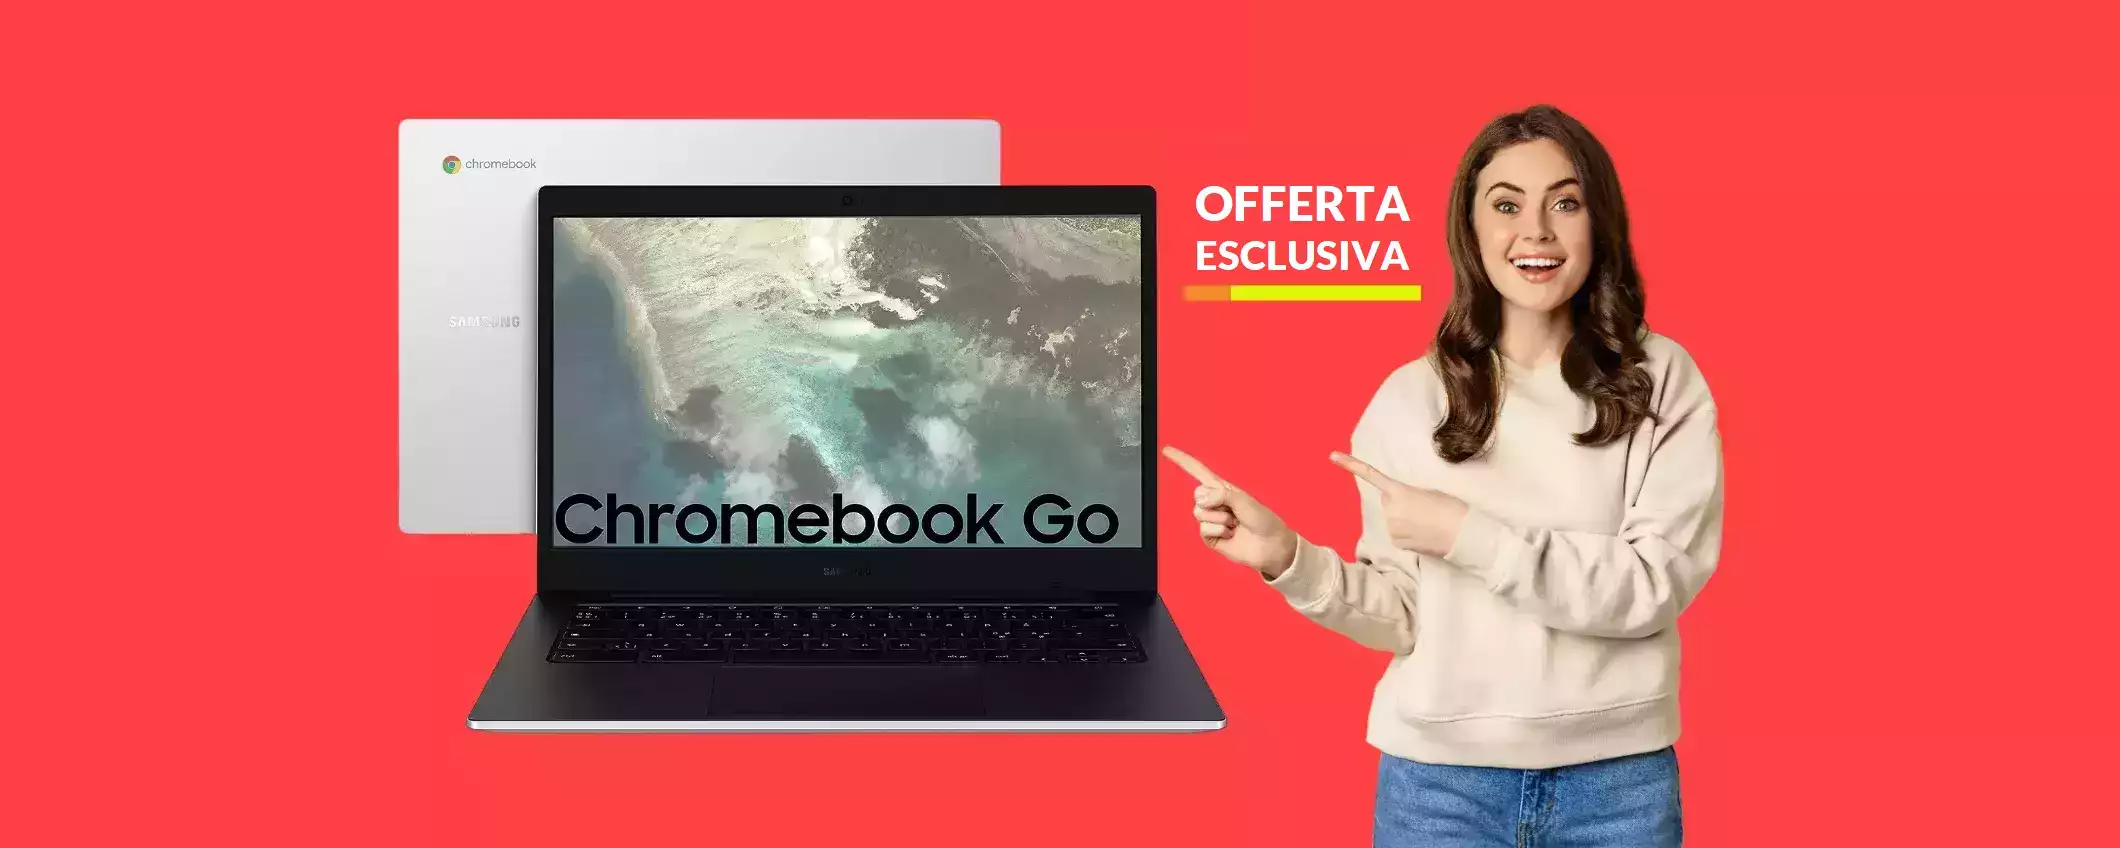 Samsung Galaxy Chromebook Go a soli 229€: il miglior PC da comprare OGGI